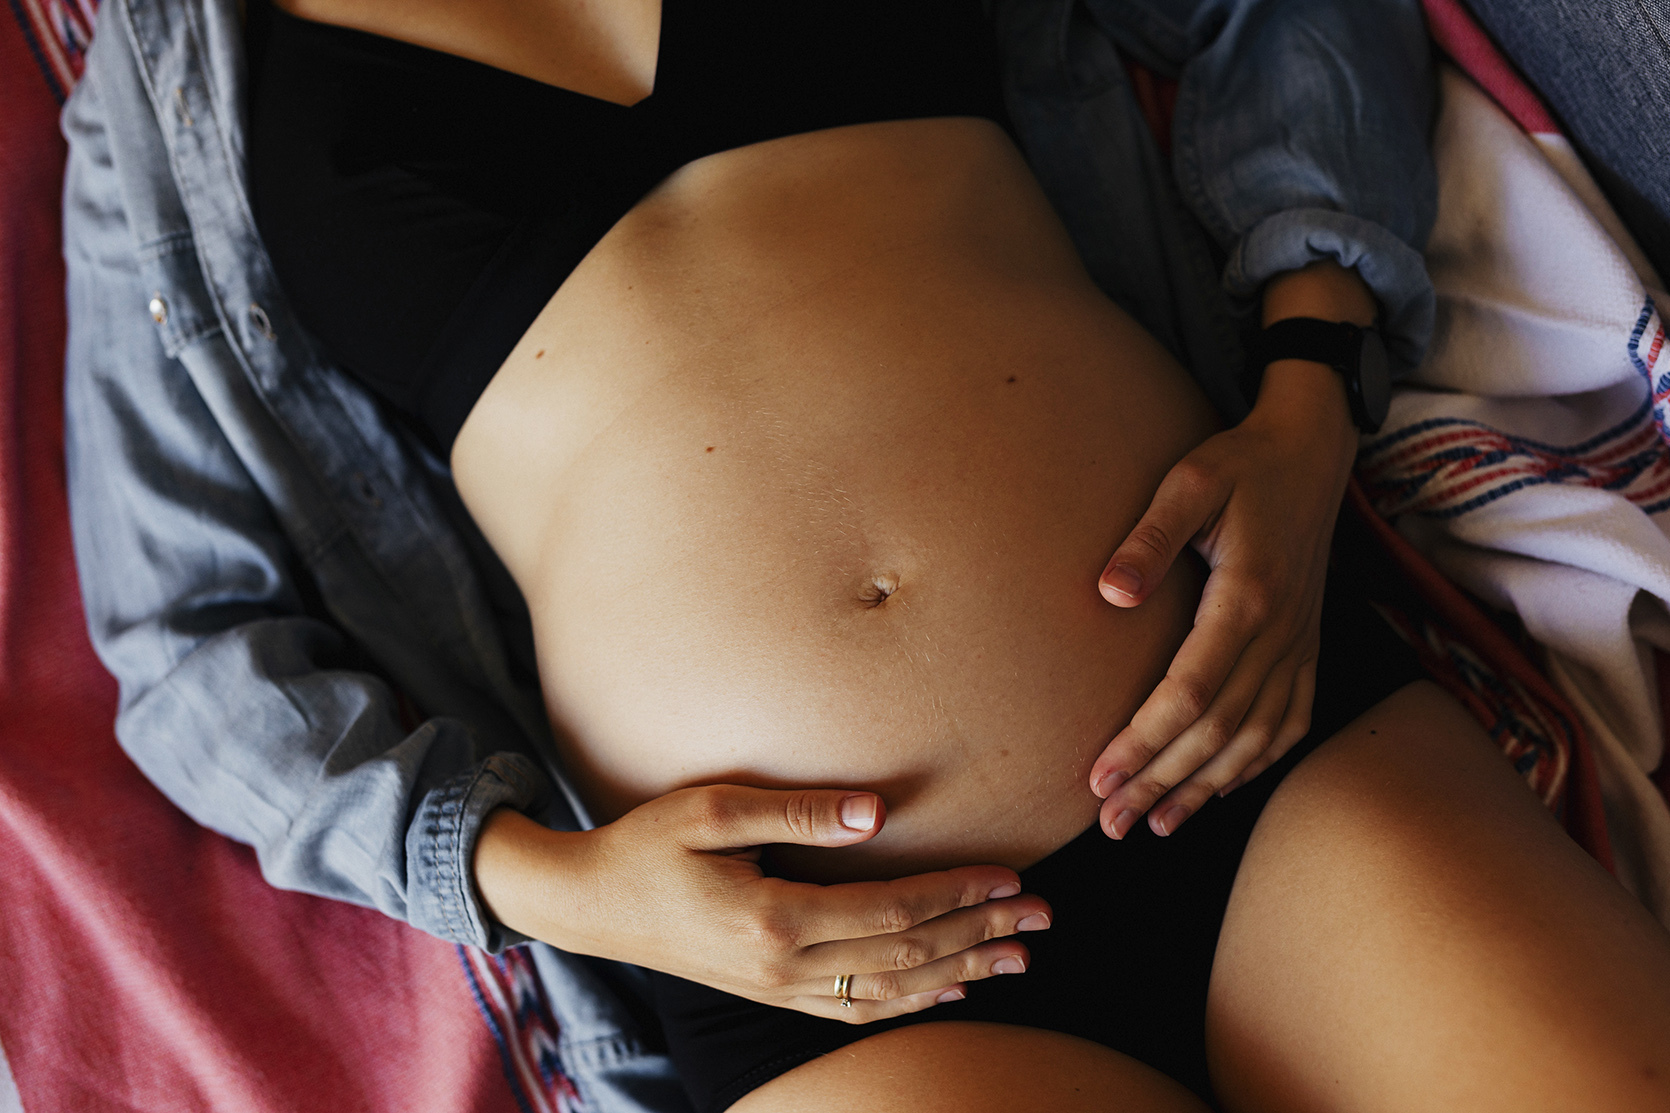 Co oznacza ból w pachwinie w ciąży? / rawpixel